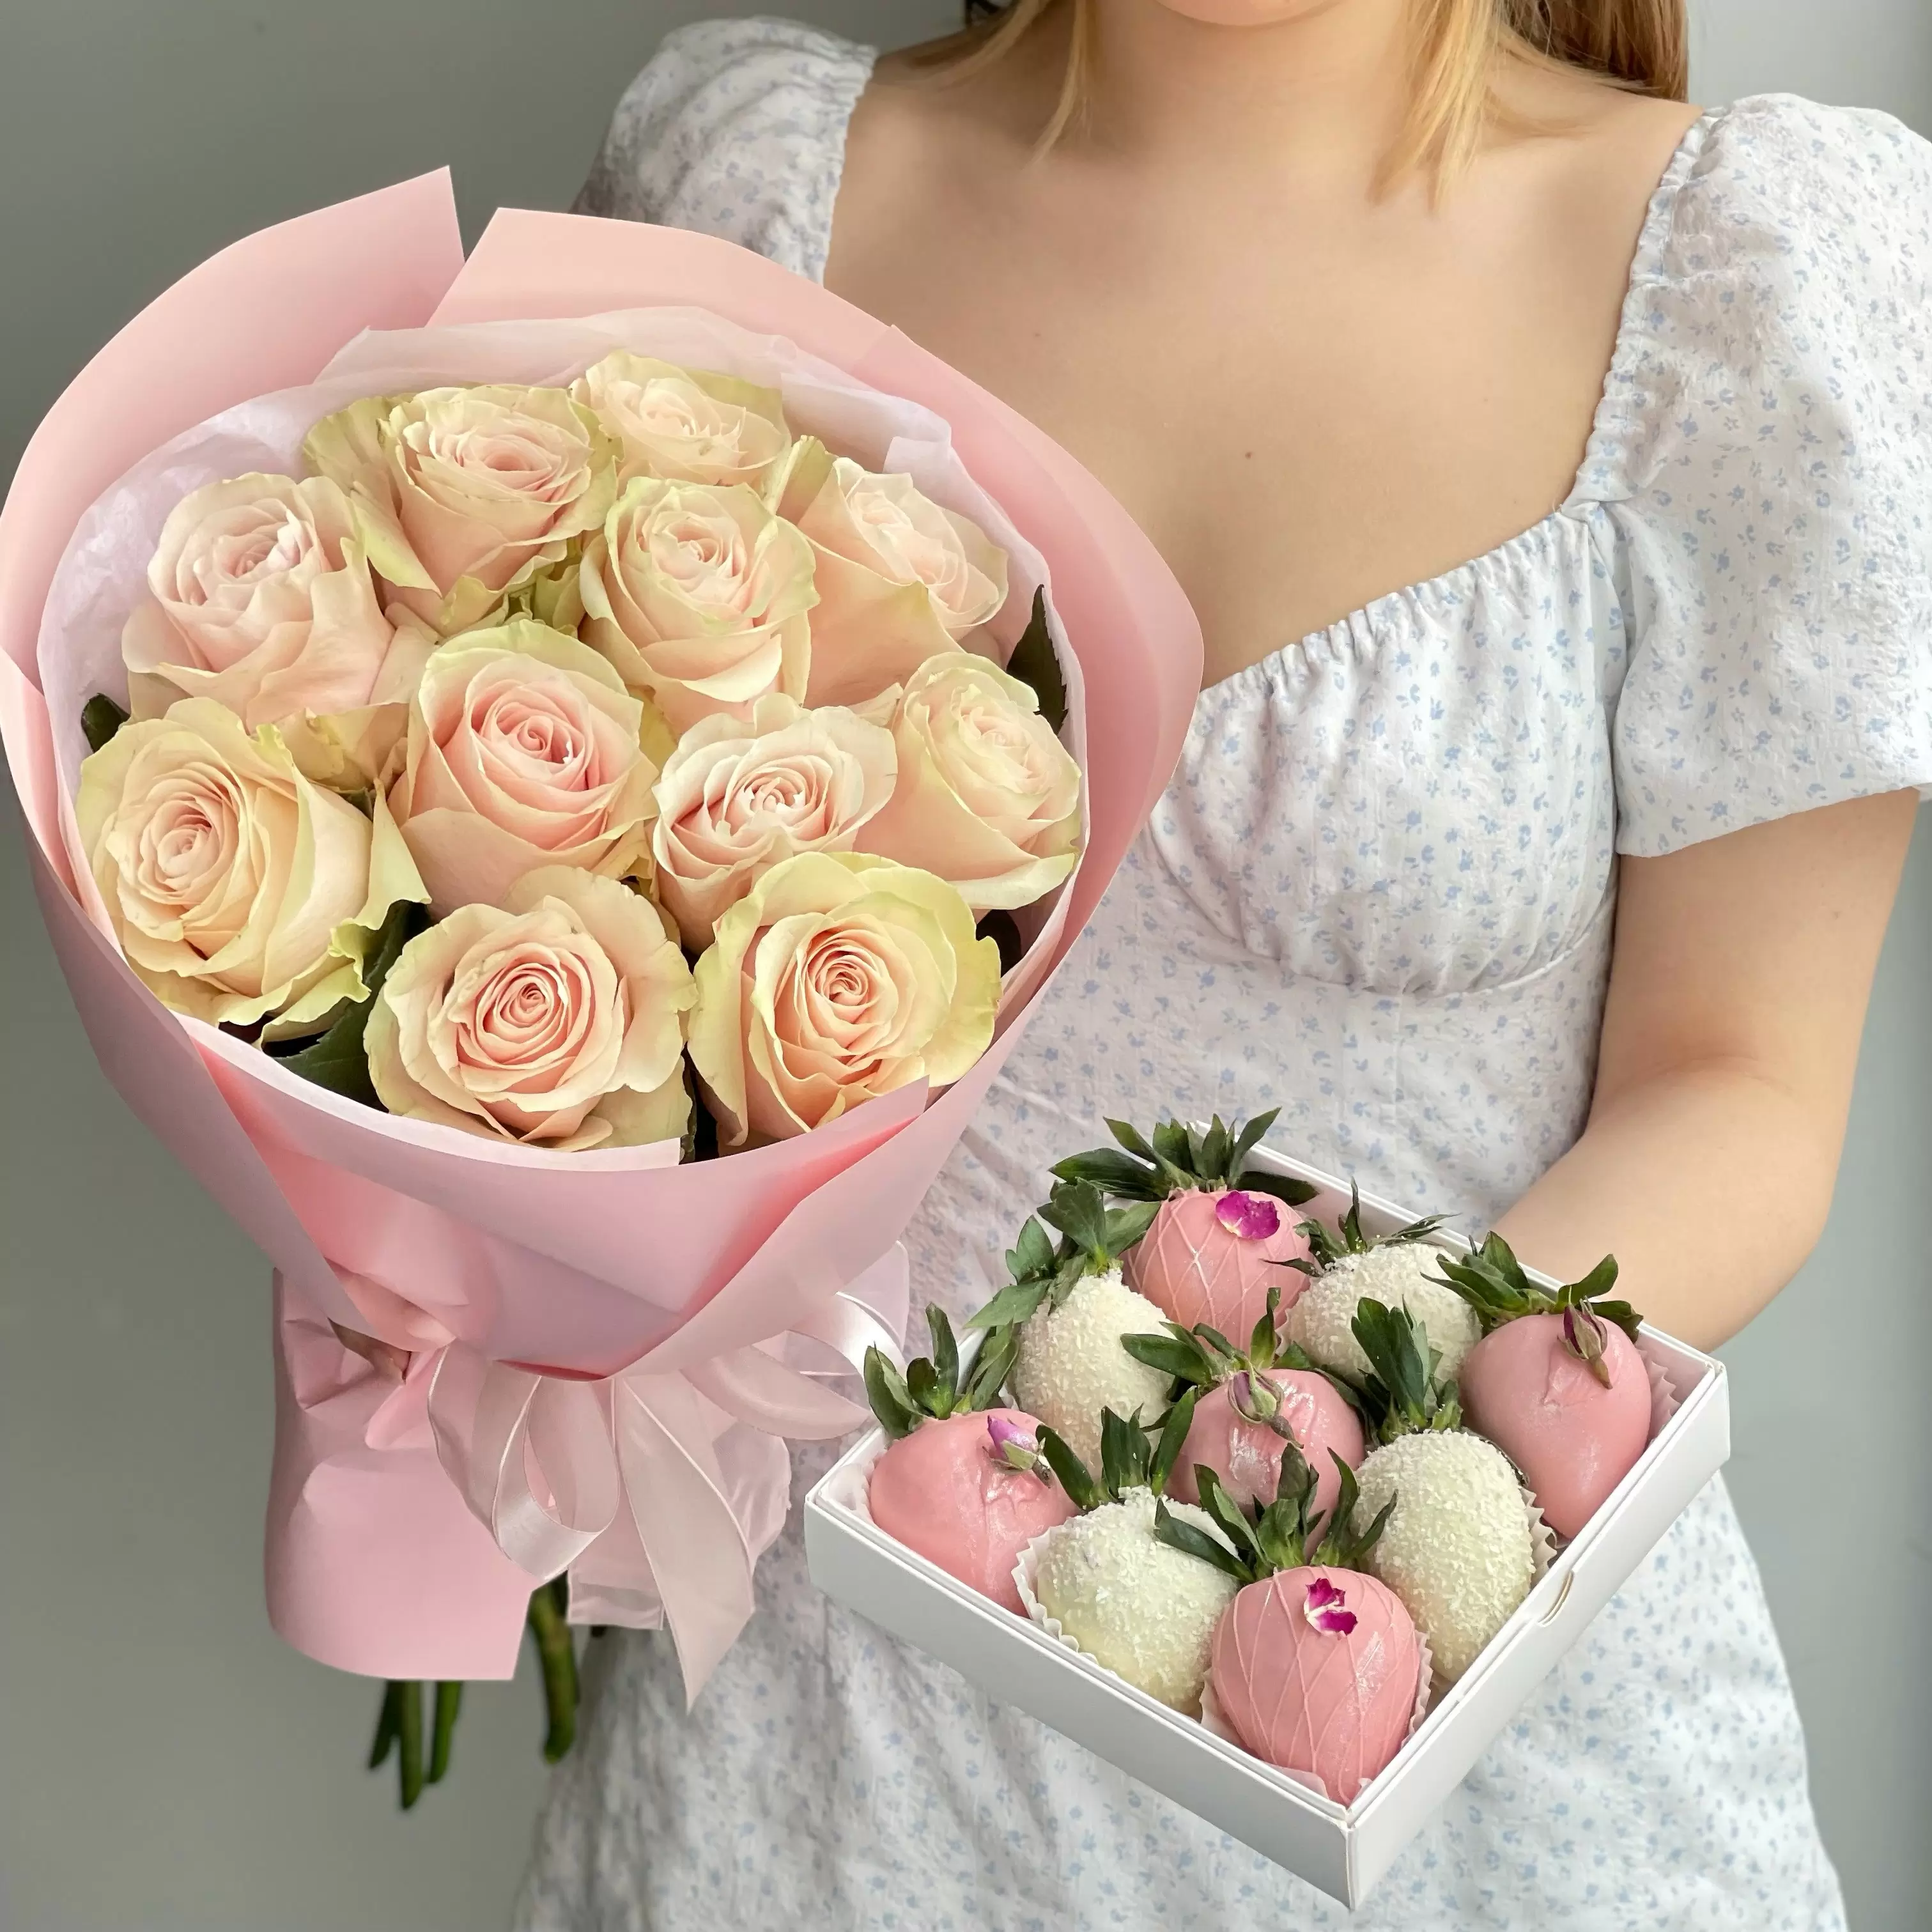 Дуо набор клубника и цветы "Princess" 6 990 руб.